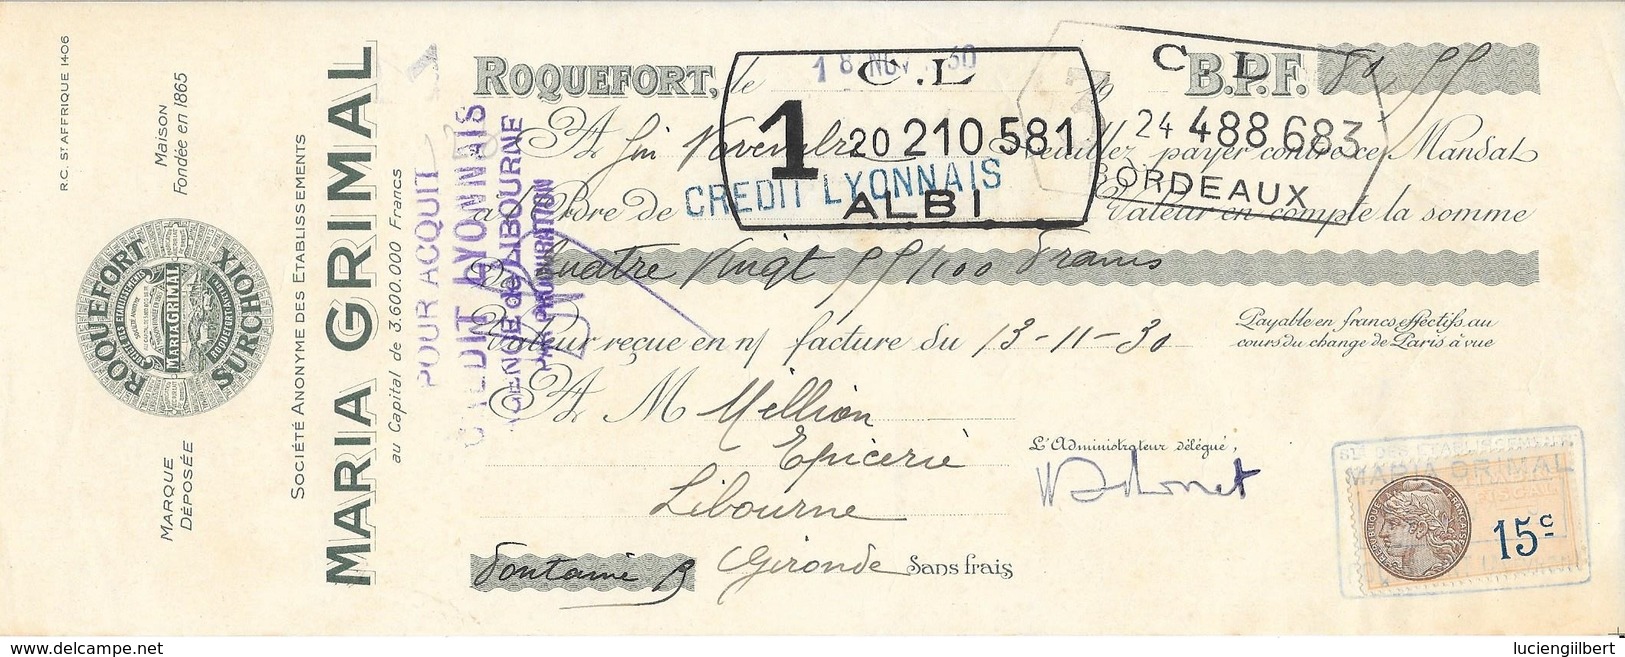 AVEYRON 12  -  ROQUEFORT - ROQUEFORT SURCHOIX MARIA GRIMAL - 1930 - LITOGRAPHIE - C.L ALBI - TIMBRE FISCAL 15C - Lettres De Change